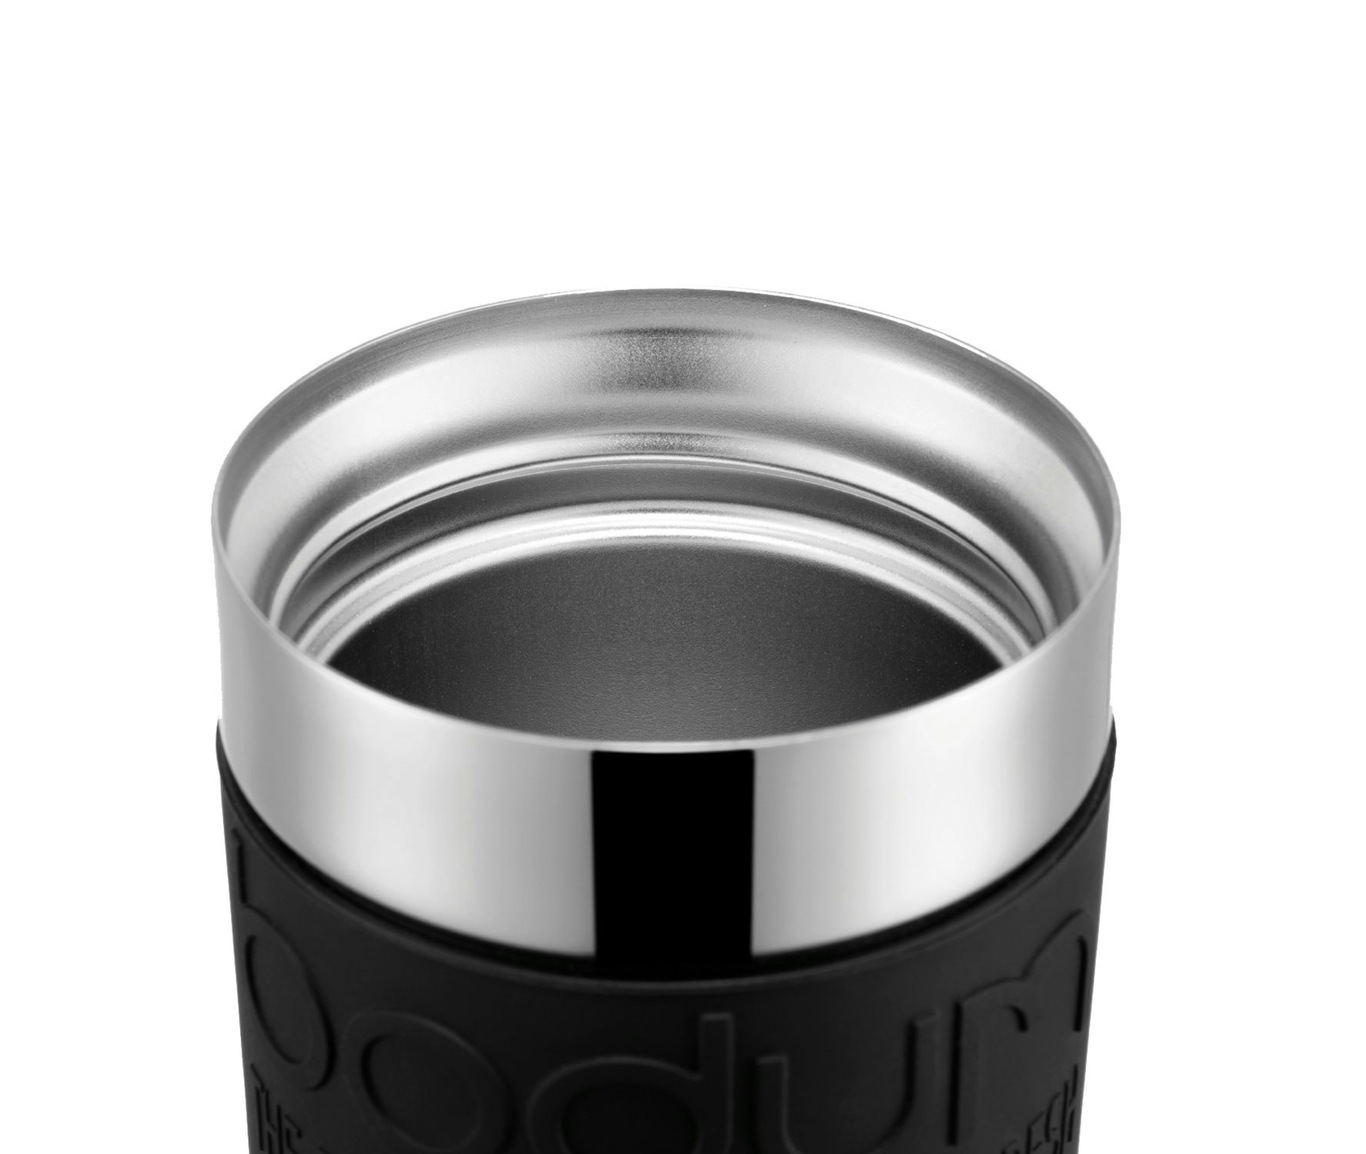 https://royaldesign.com/image/2/bodum-travel-mug-035l-chrome-black-2?w=800&quality=80